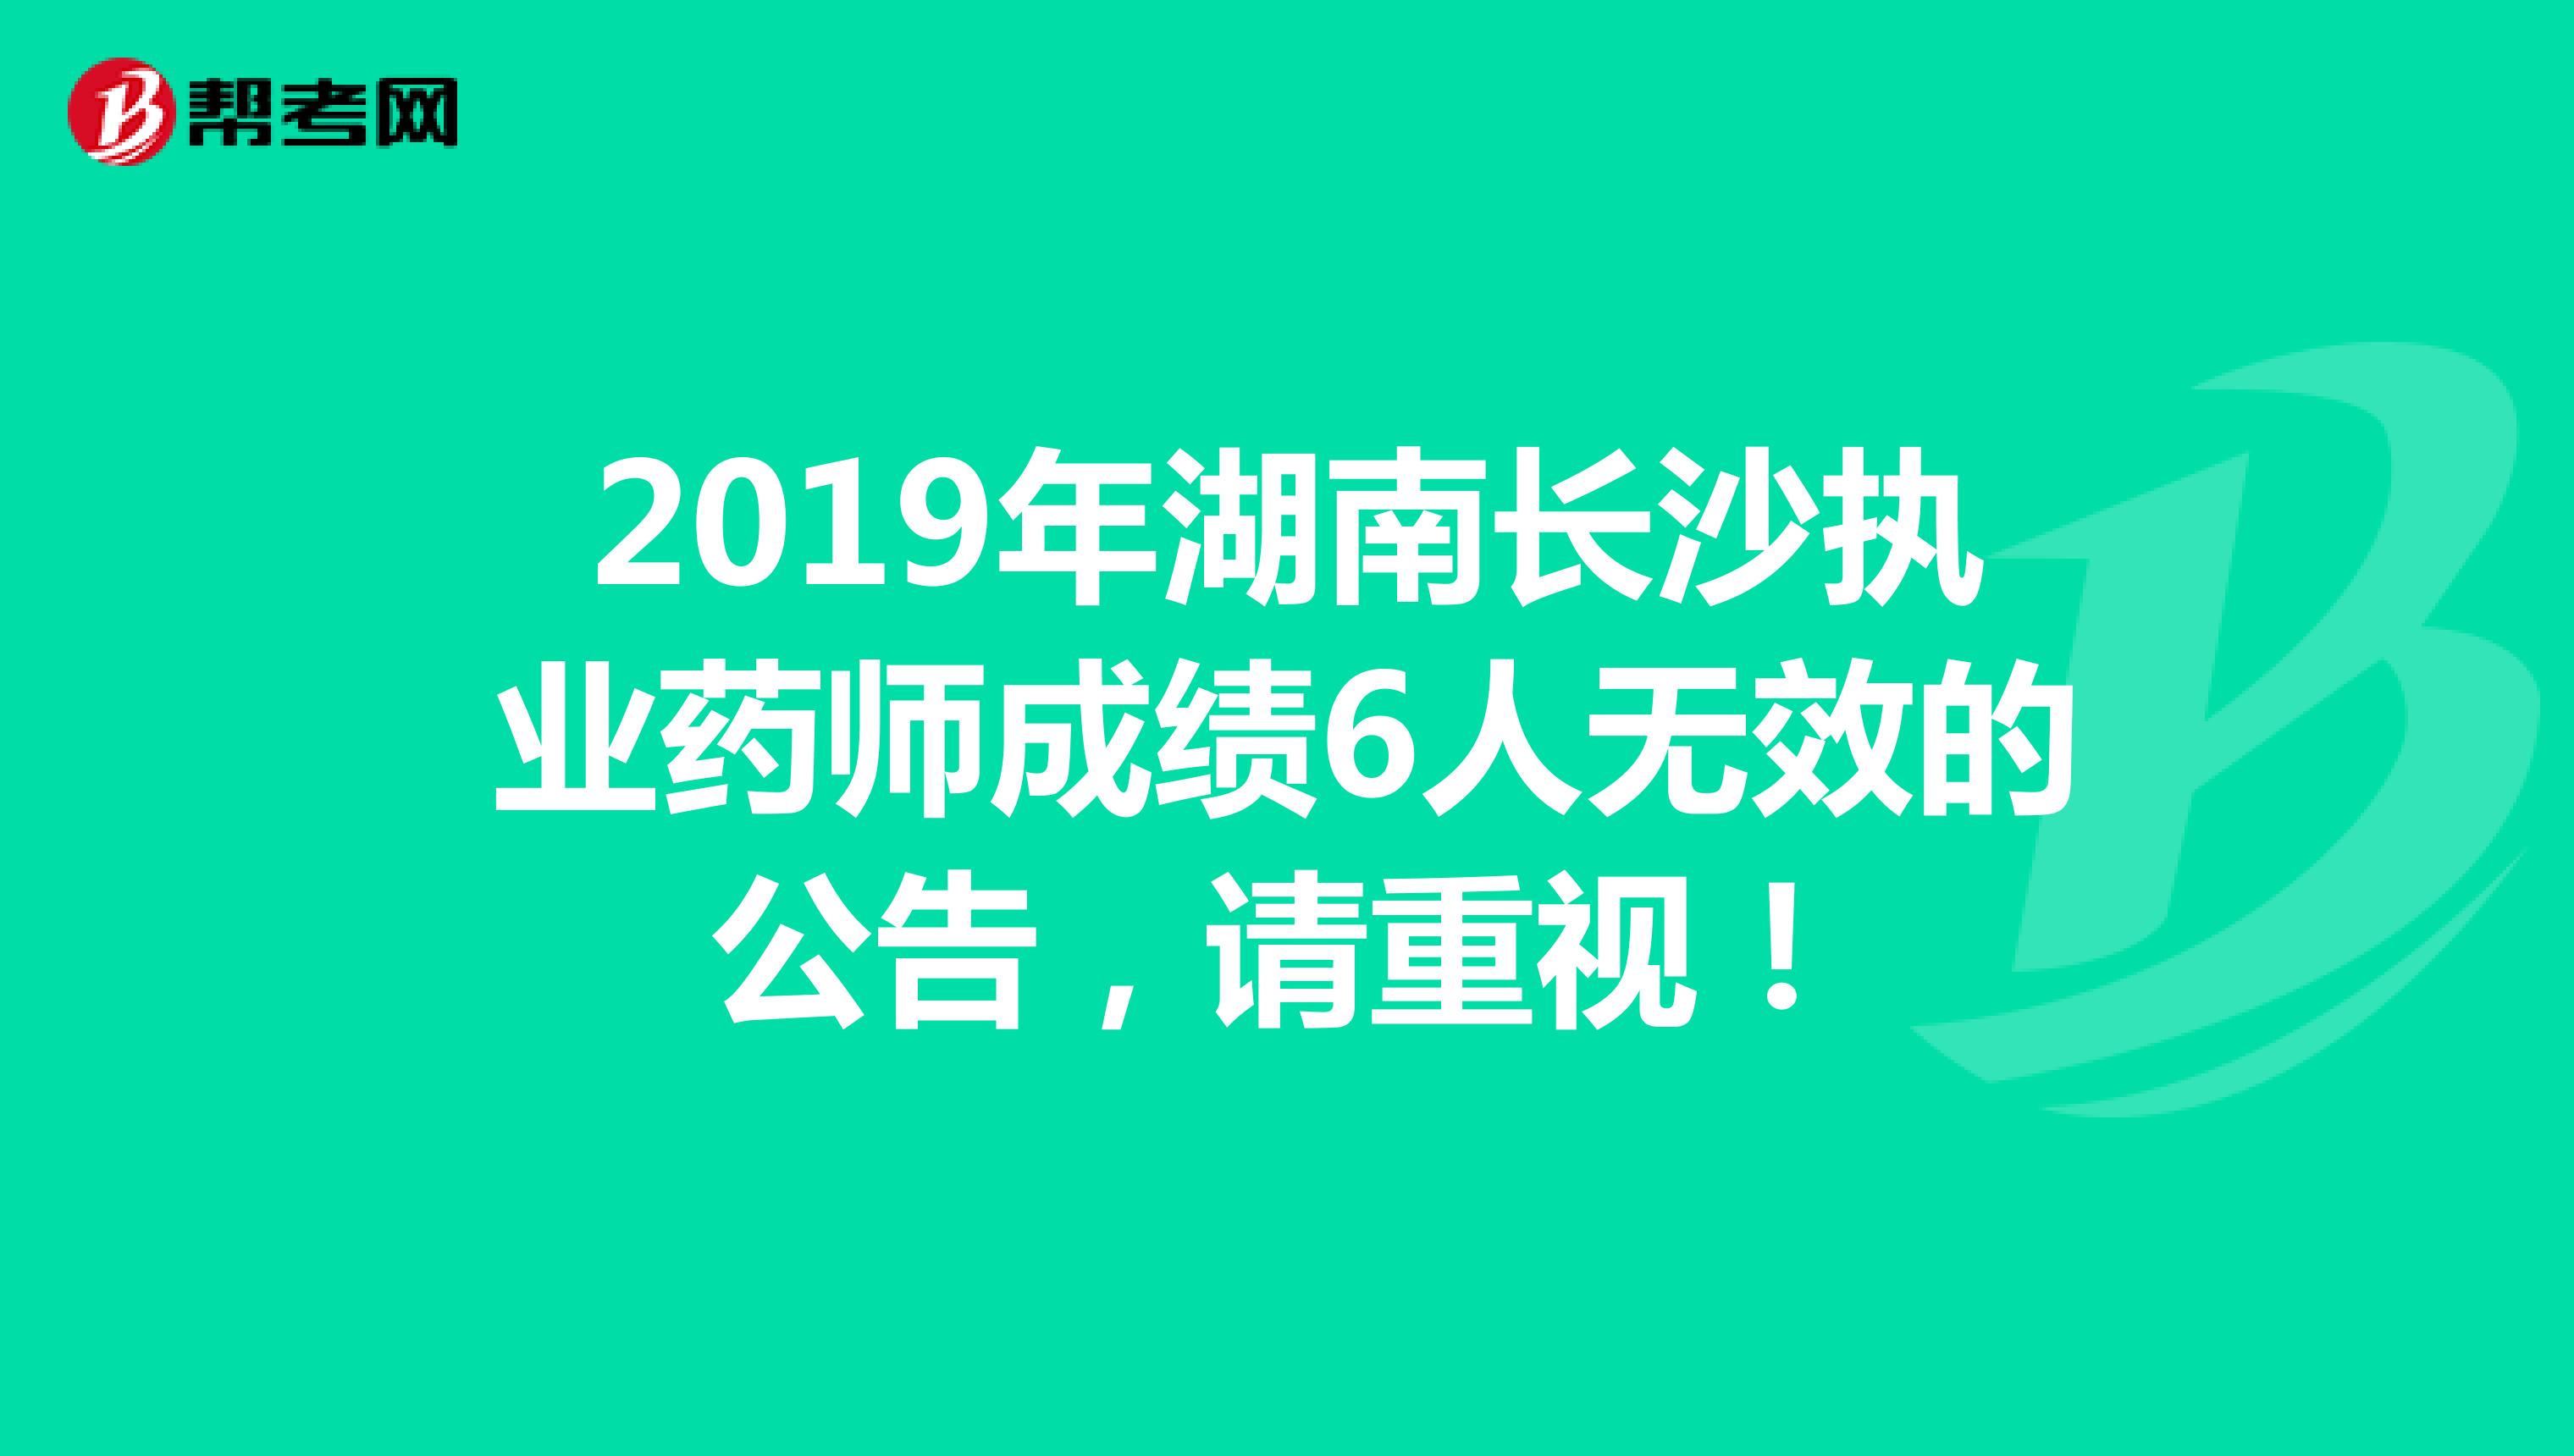 2019年湖南长沙执业药师成绩6人无效的公告，请重视！